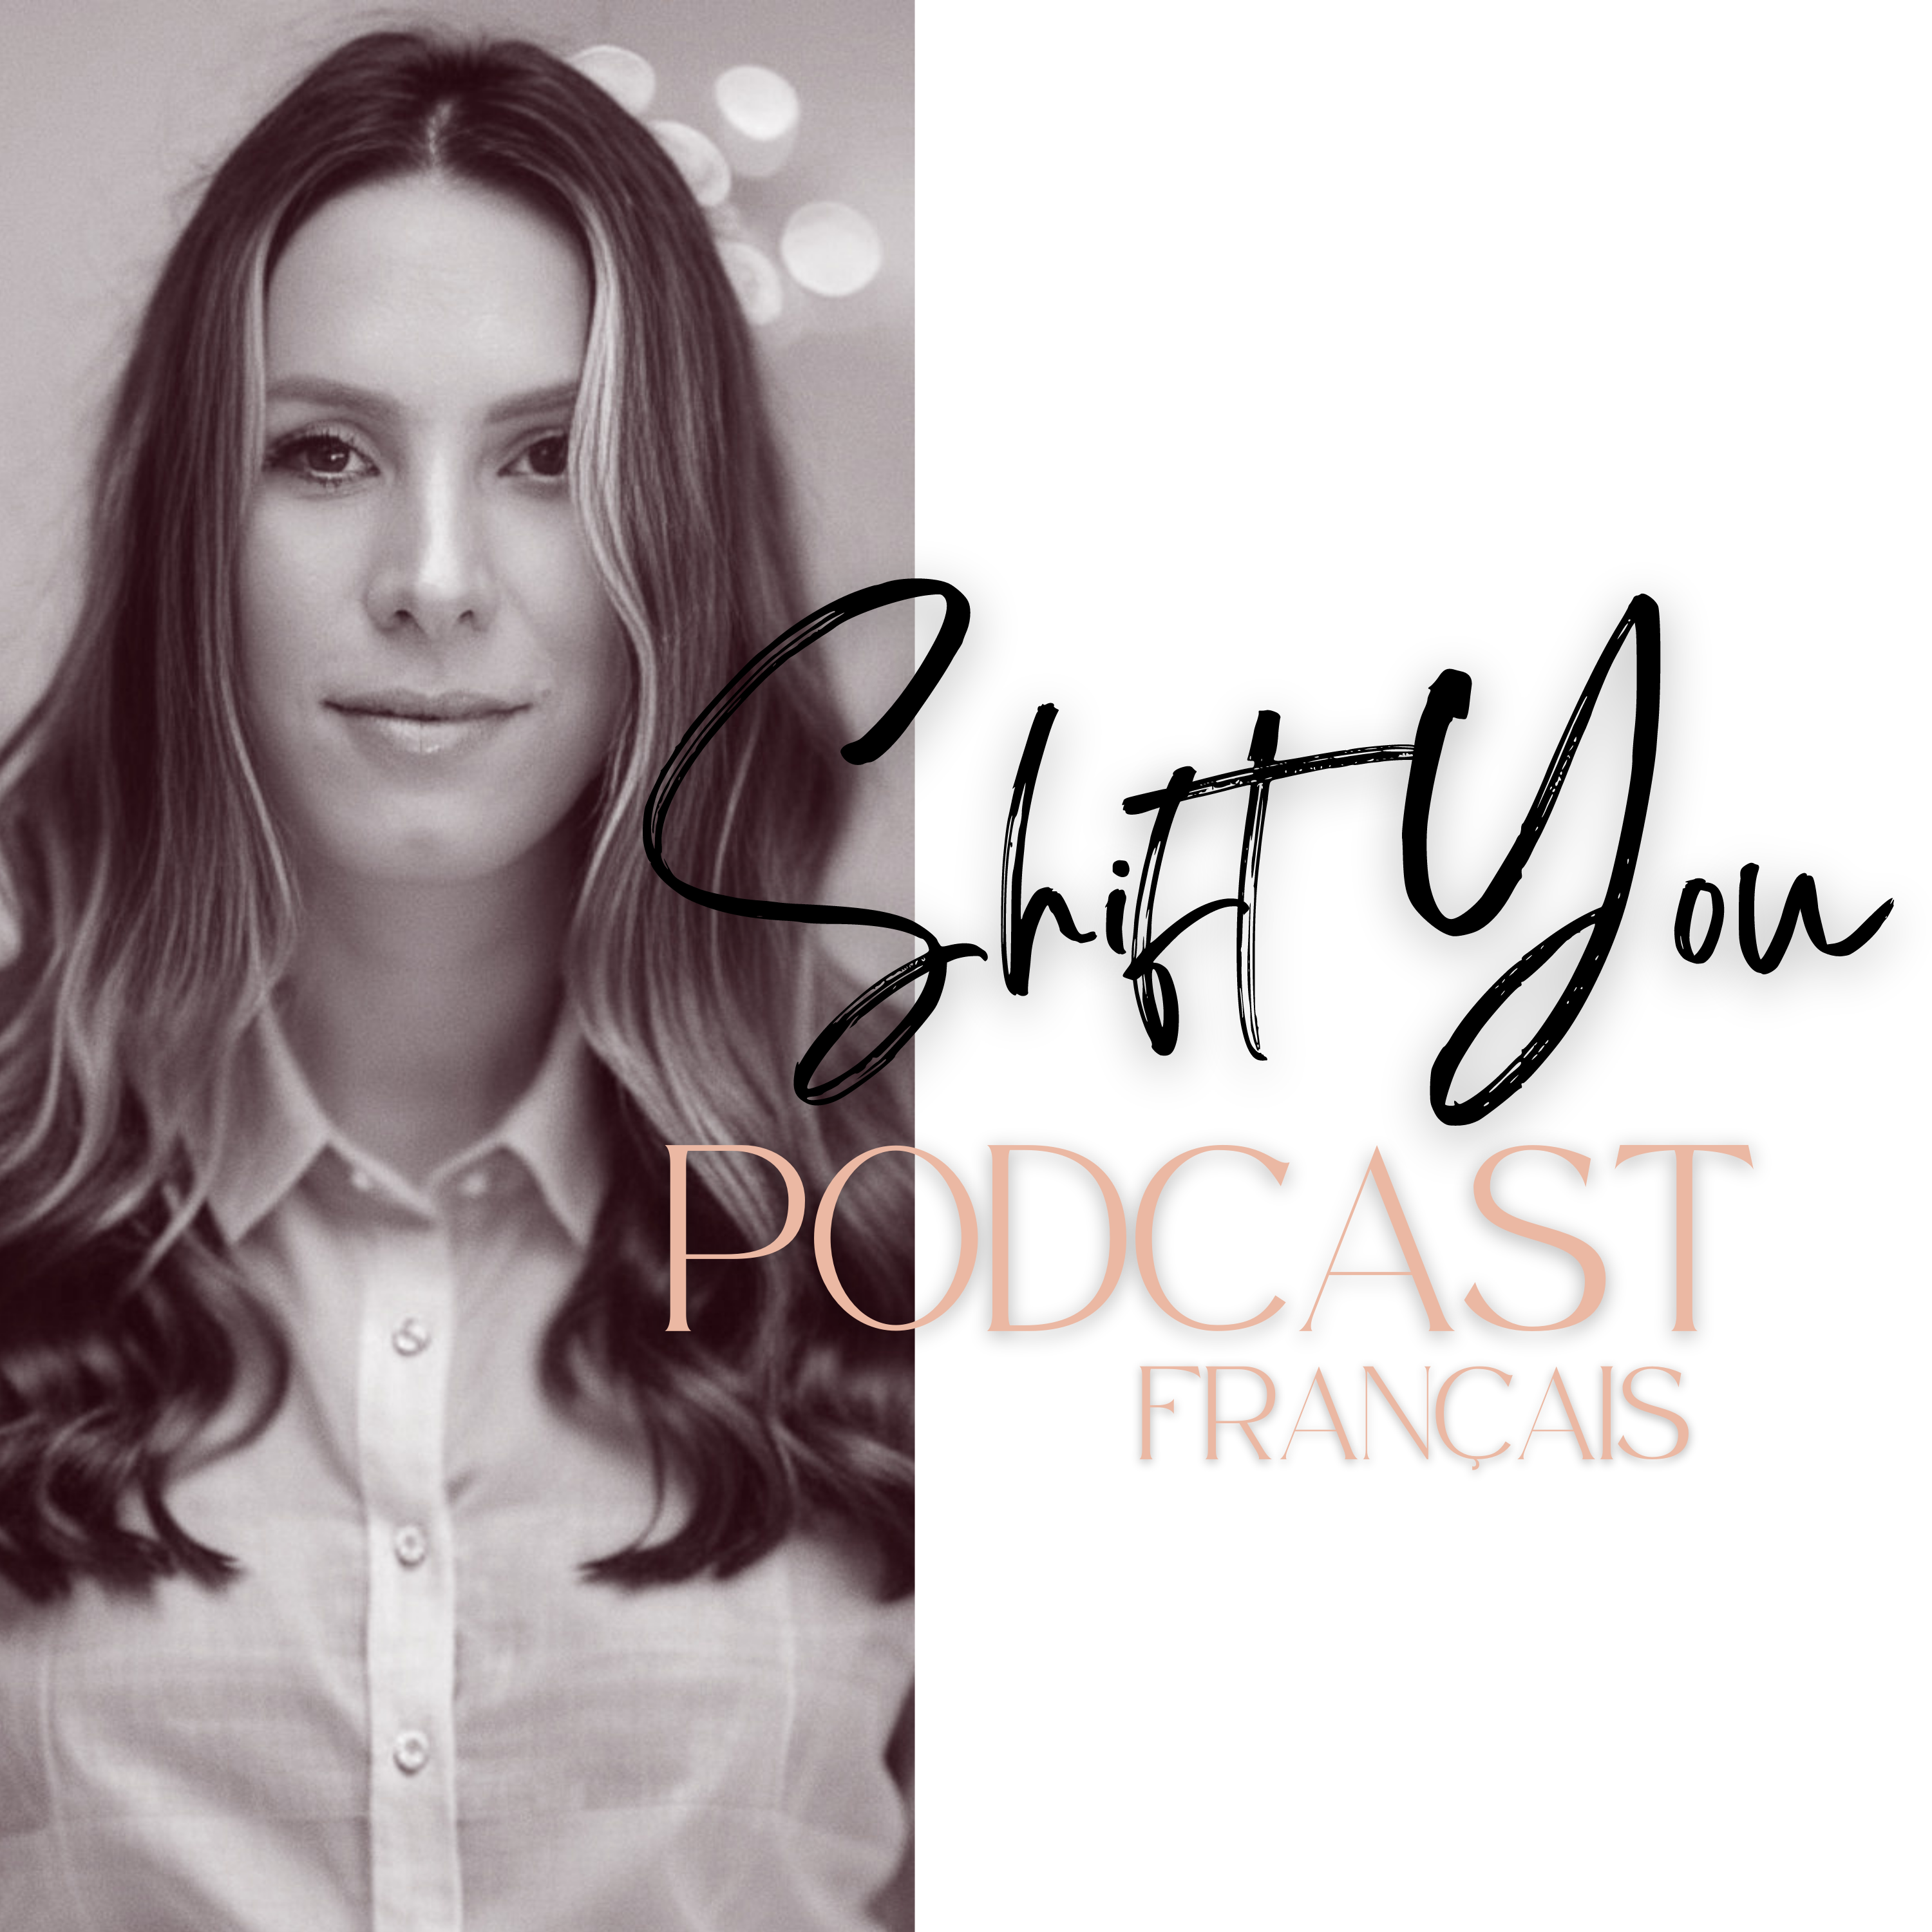 Podcast français armelle bontemps mel de bontemps podcaster podcast france